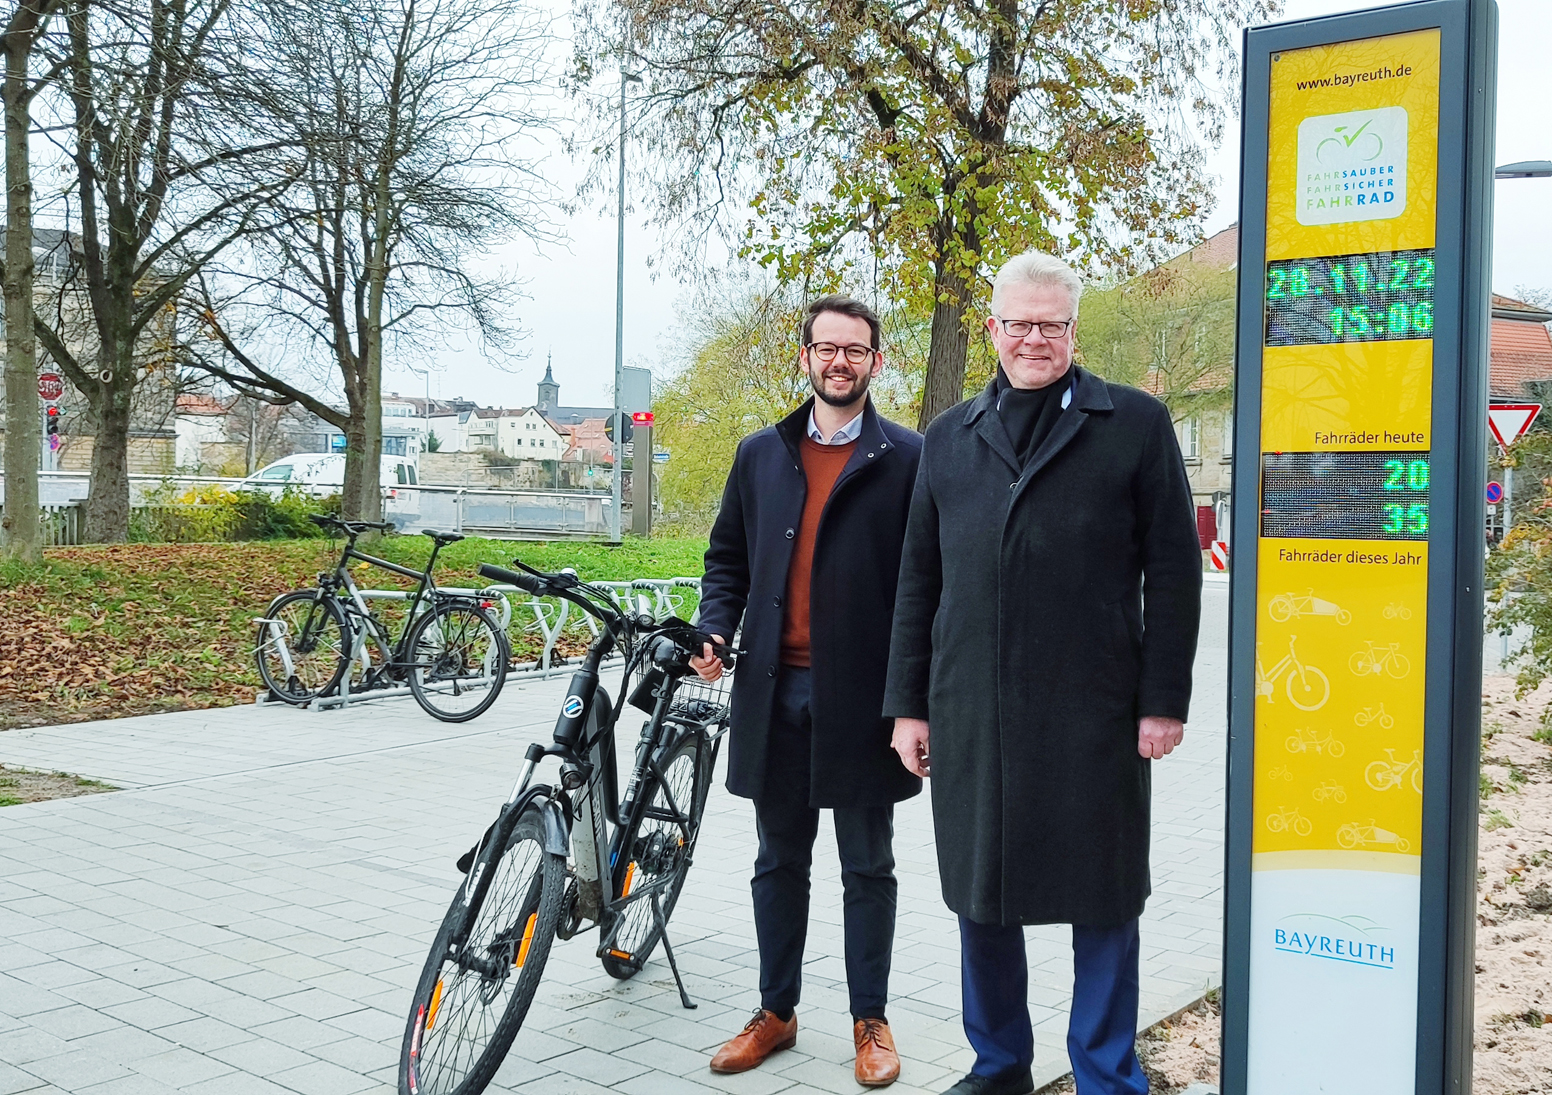 OB Ebersberge und Bürgermeister Zippel mit Rad an der gelben Radzählsäule.